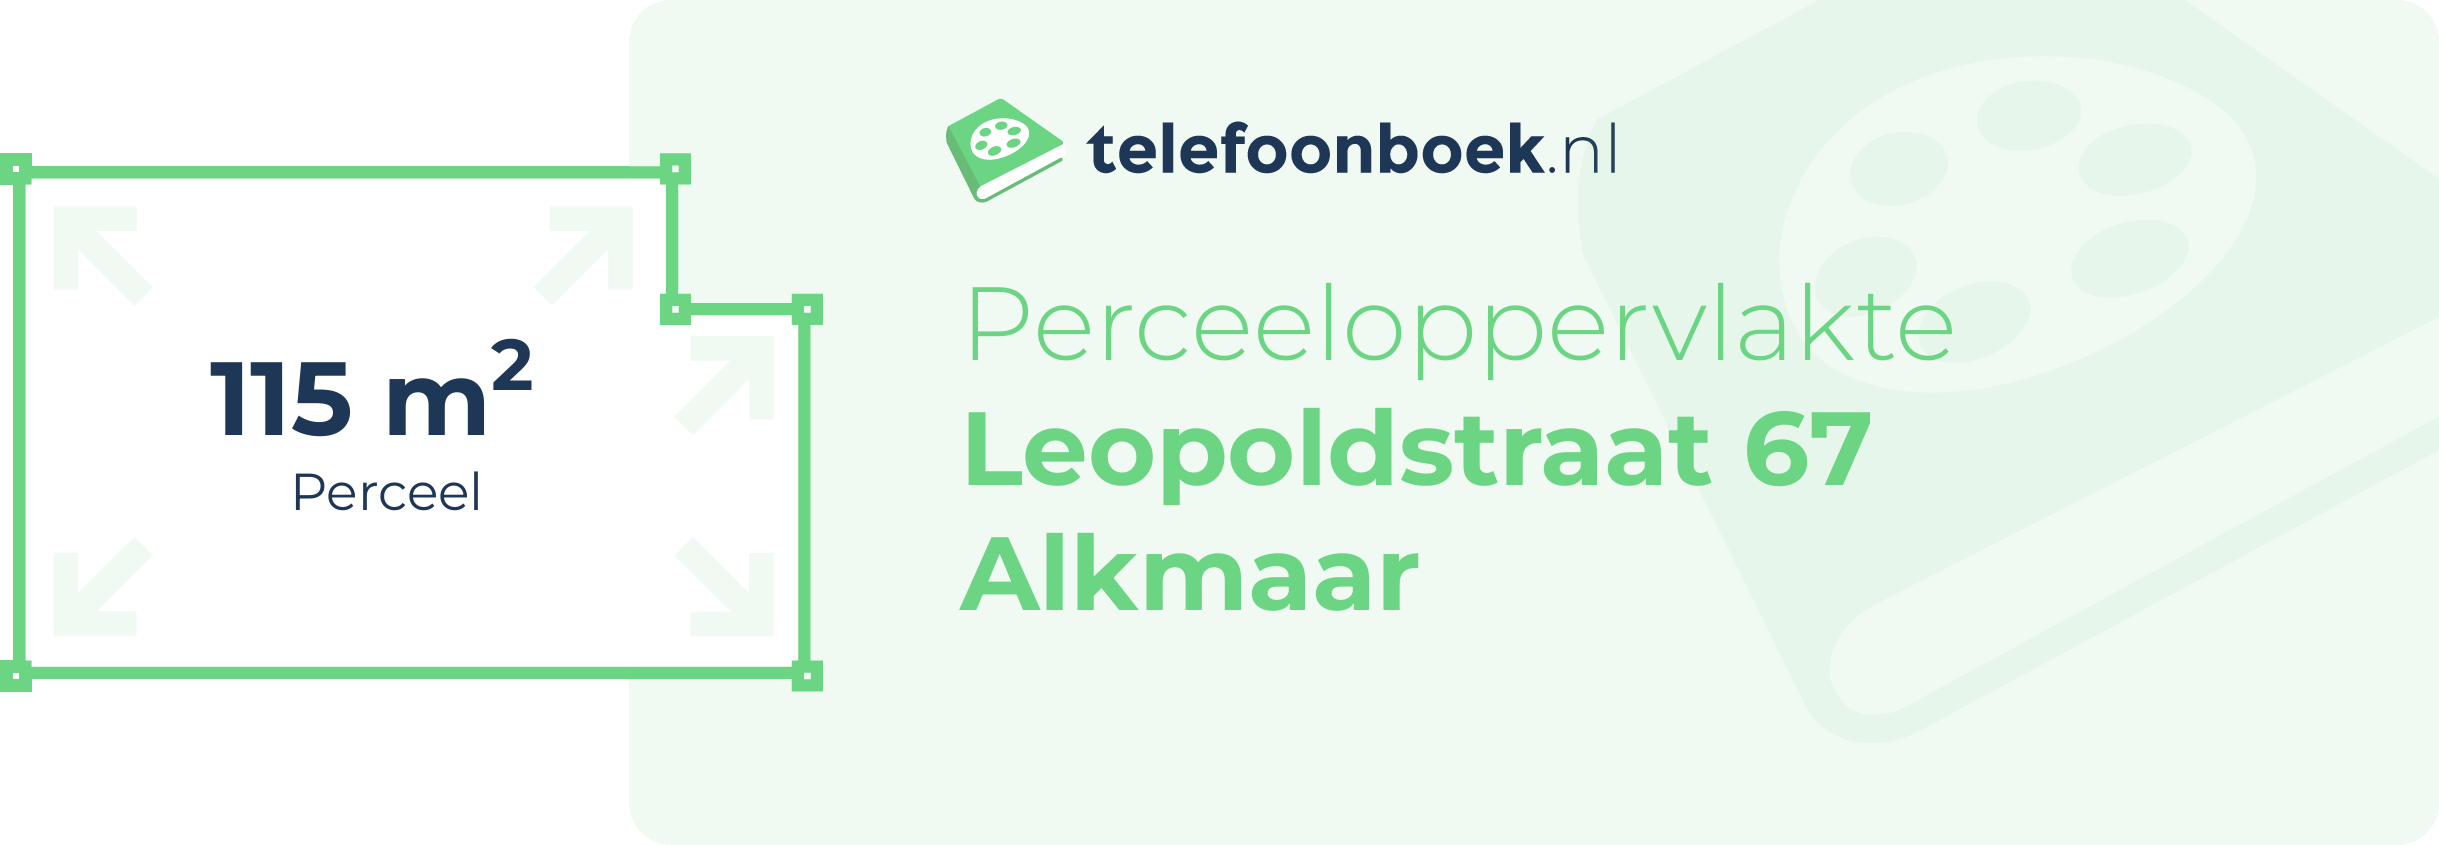 Perceeloppervlakte Leopoldstraat 67 Alkmaar